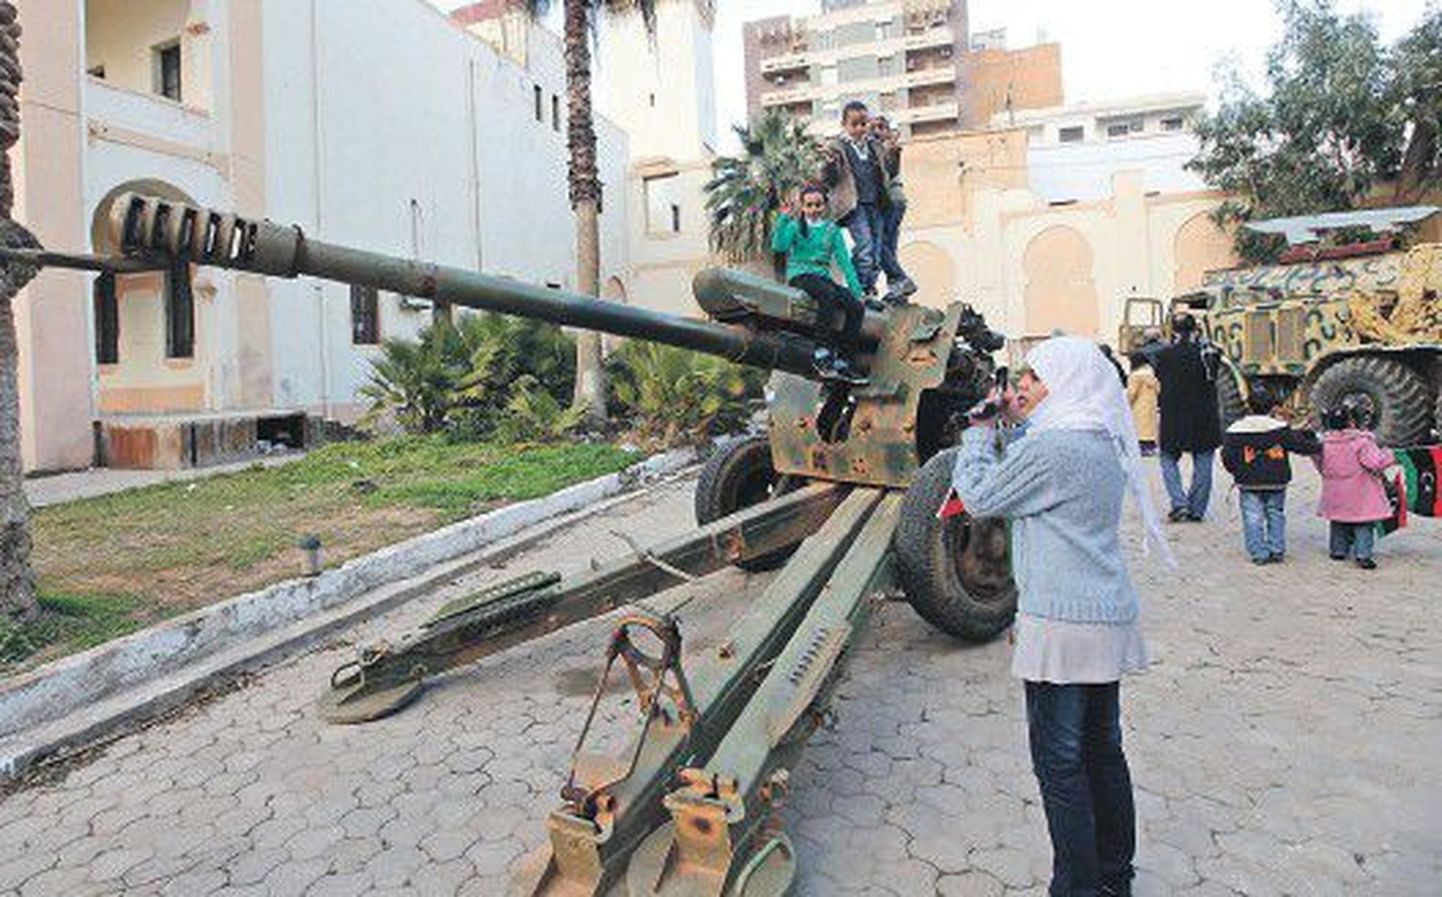 Пока правительство пытается вернуть жизнь в мирное русло, дети Ливии изучают пушку, выставленную на всеобщее обозрение по случаю первой годовщины ливийской революции.